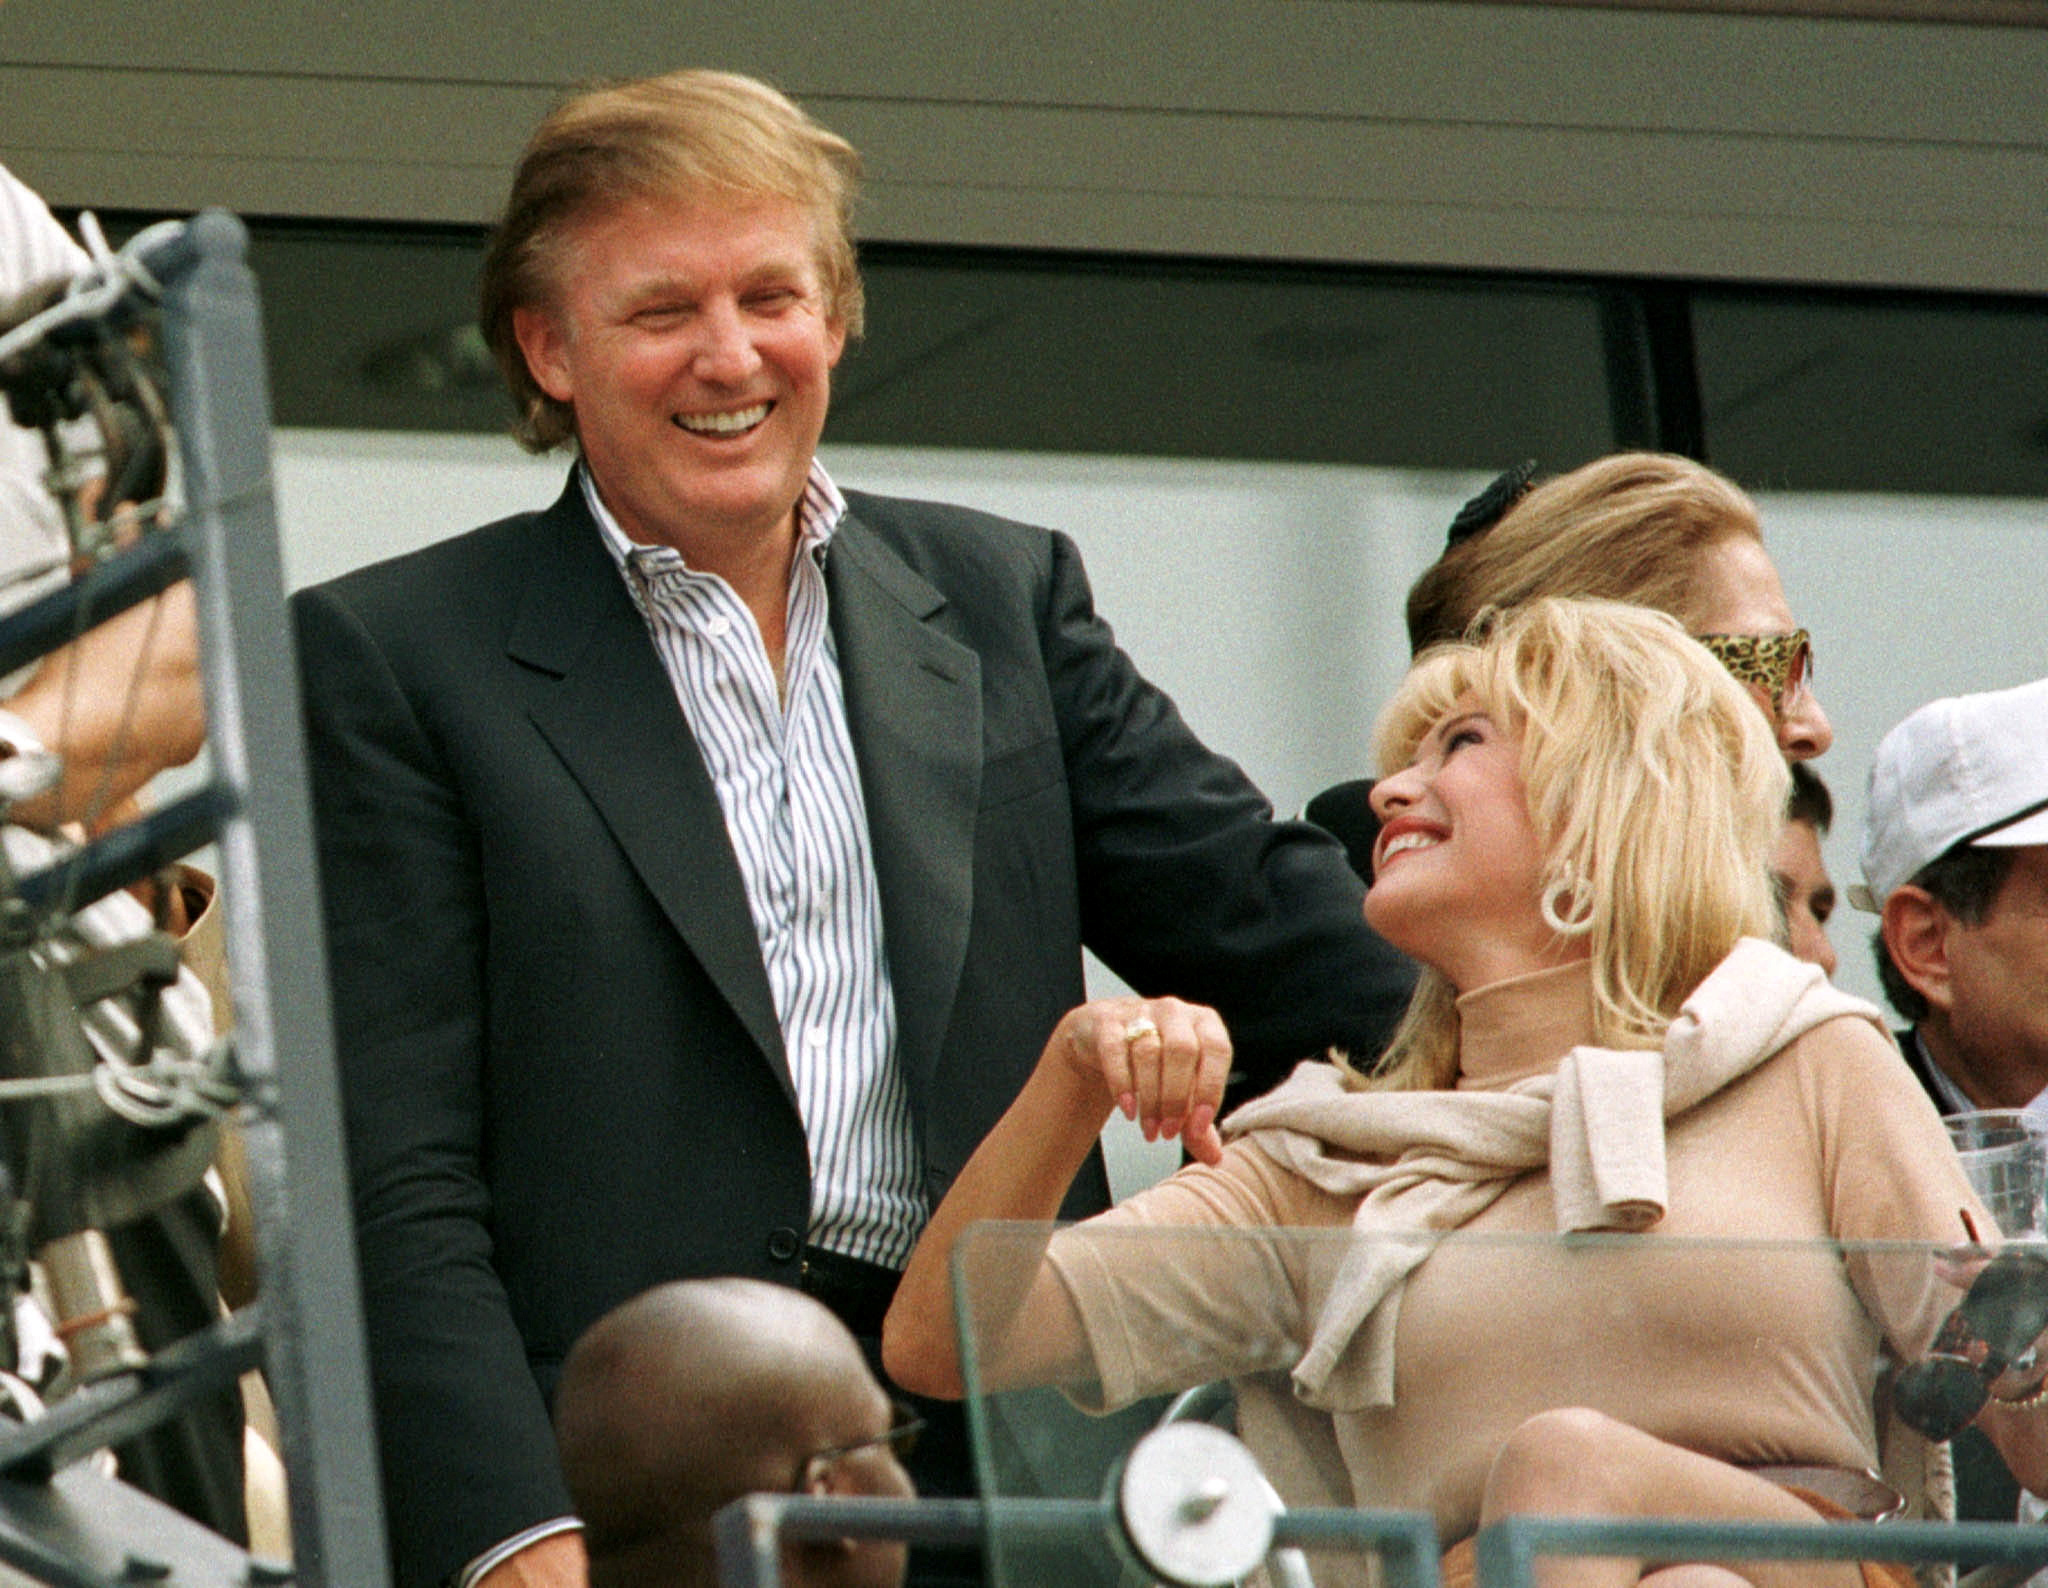 Foto d'archivio: Donald Trump con Ivana Trump nel 1997 (Reuters/Mike Blake)